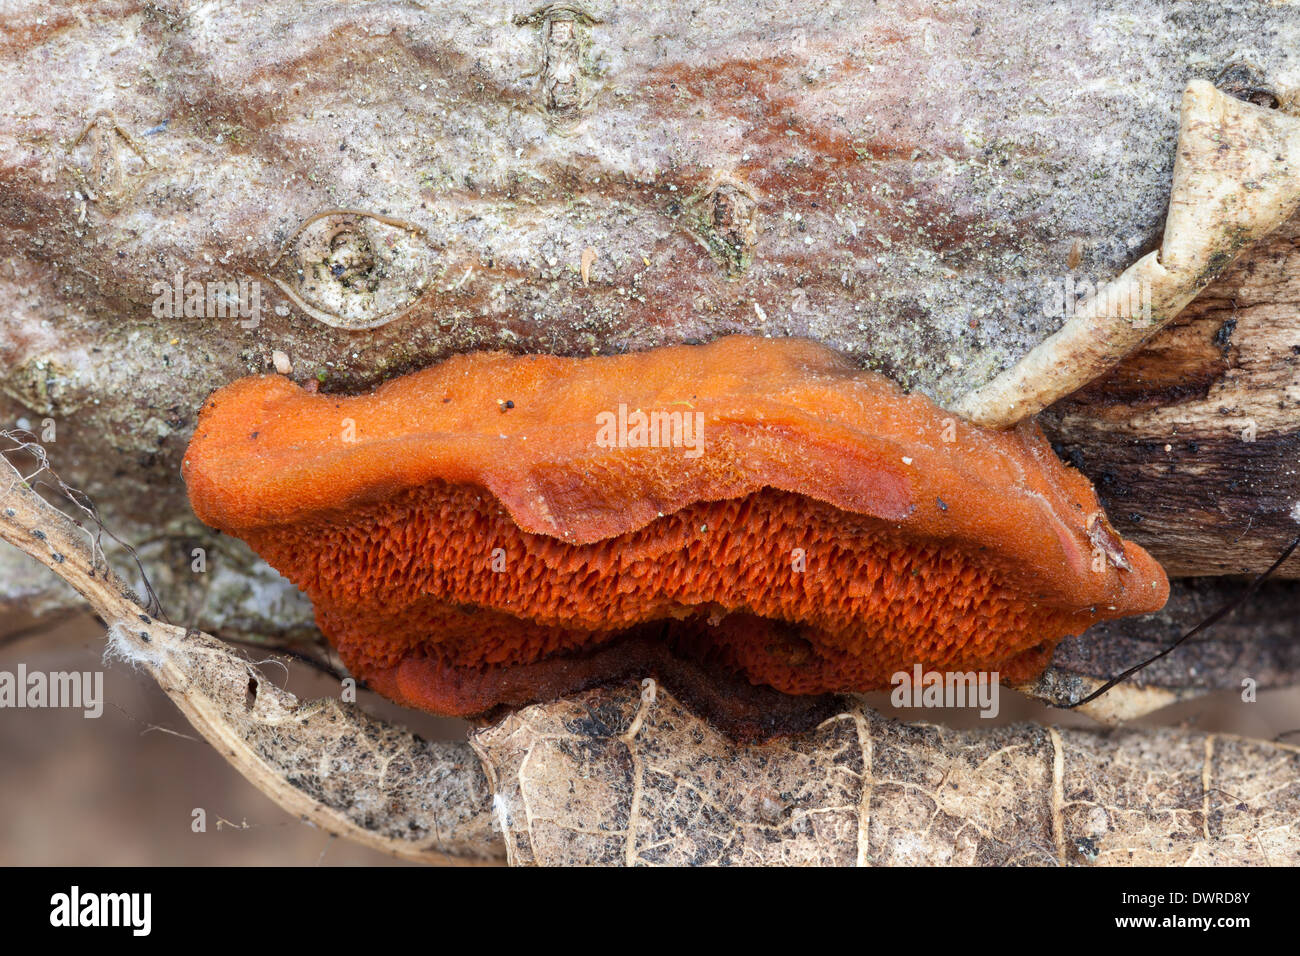 Pycnoporus cinnabarinus mushroom Stock Photo